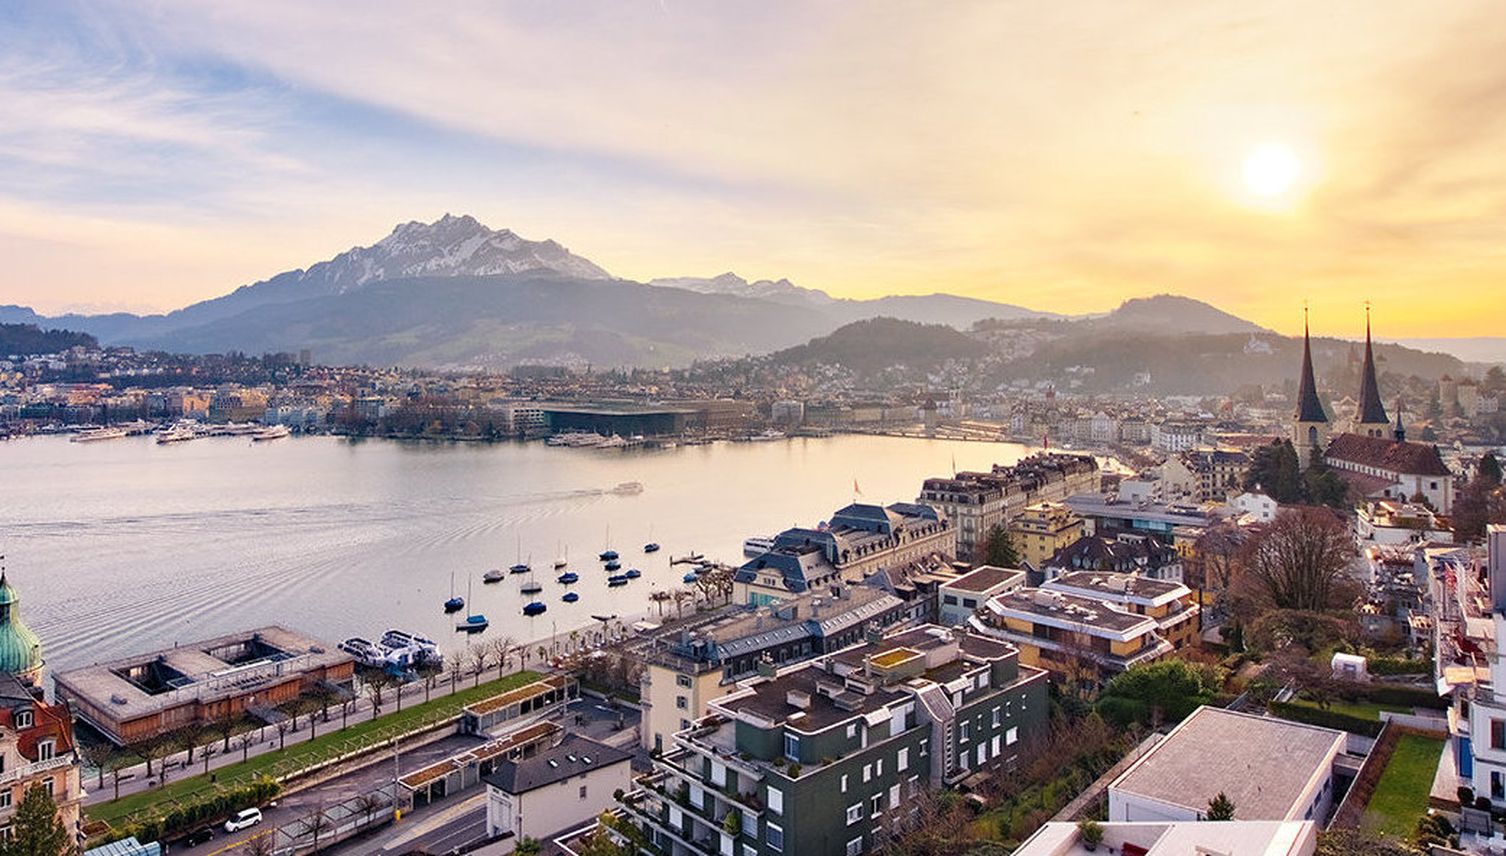 Werbe-Panne: Hotel in Luzern wirbt mit fremder Terrasse